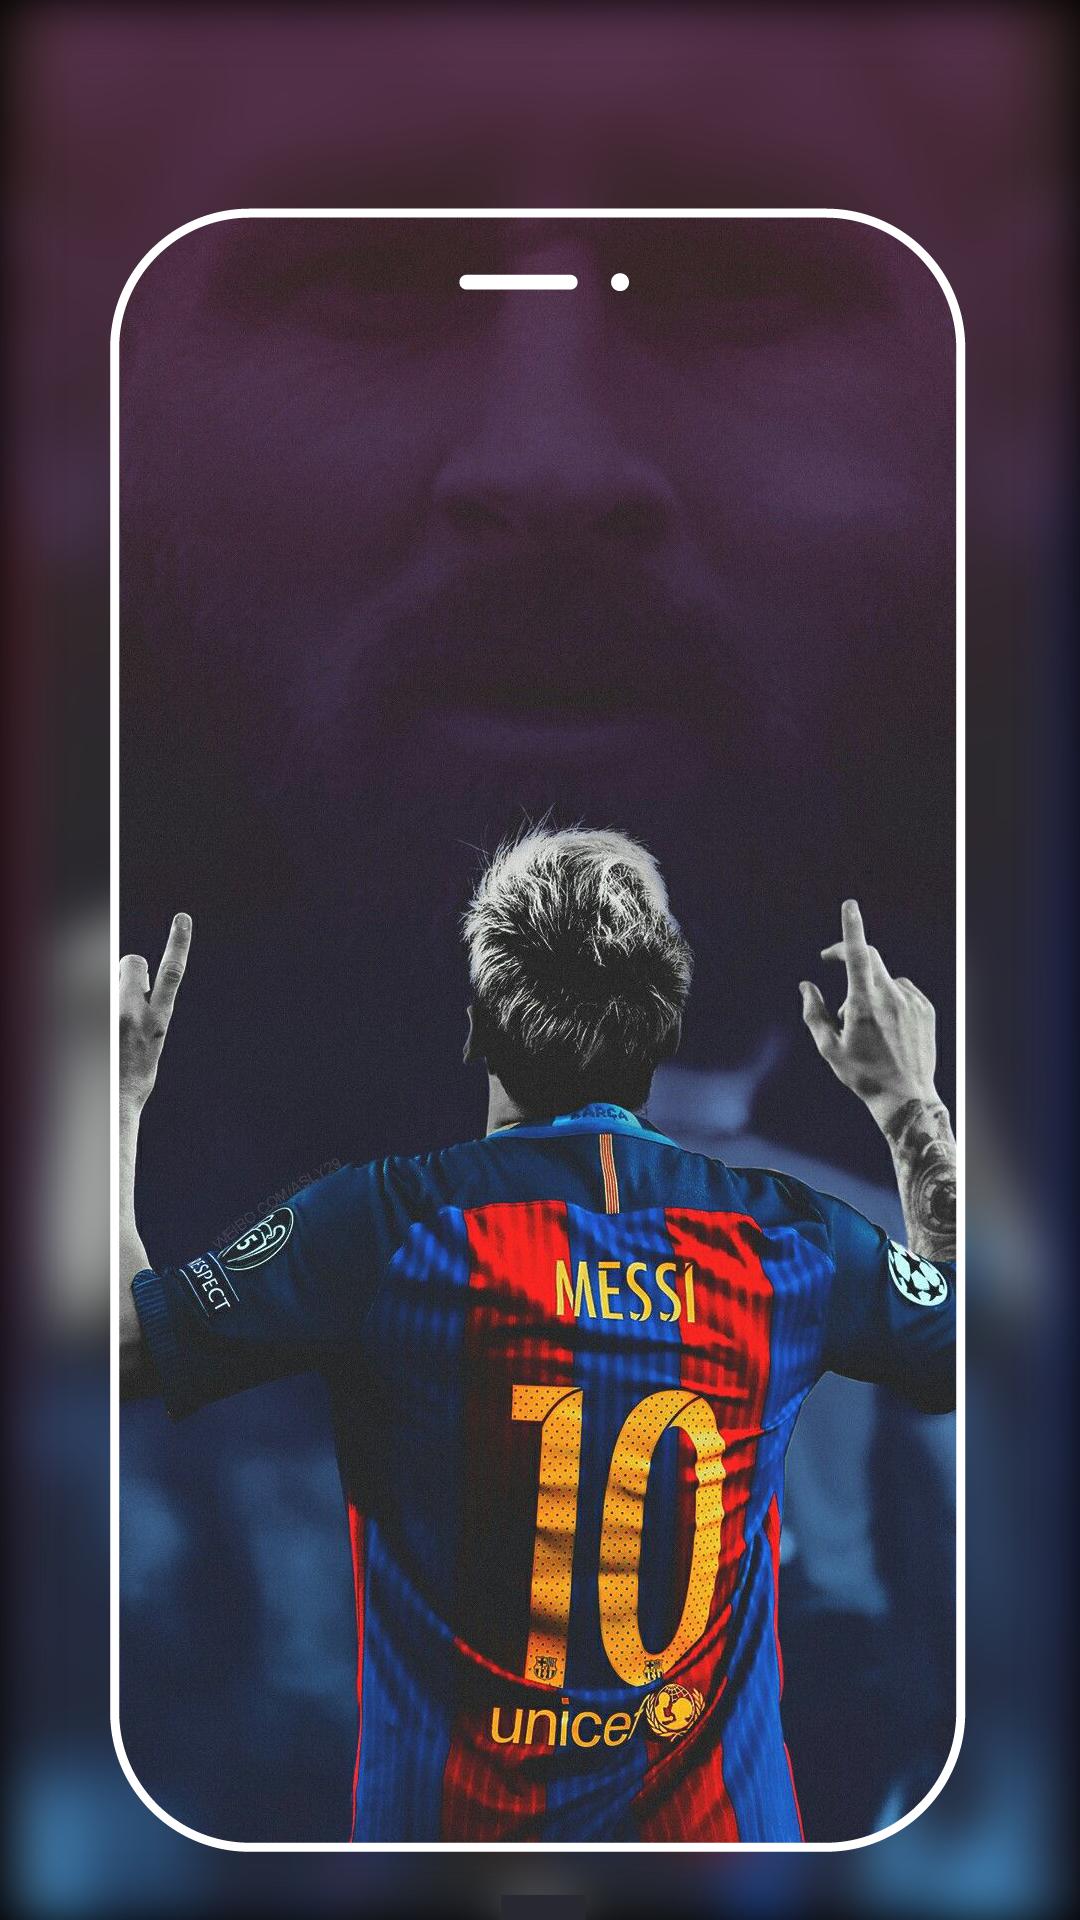 Bạn là một fan cuồng của Messi? Hãy chào đón bức tranh nền 4k với chân dung ngôi sao bóng đá của Barcelona trong màu sắc sống động và sắc nét nhất. Hãy xem điều kỳ diệu mà màn hình của bạn mang lại khi bạn tải về bức ảnh này.